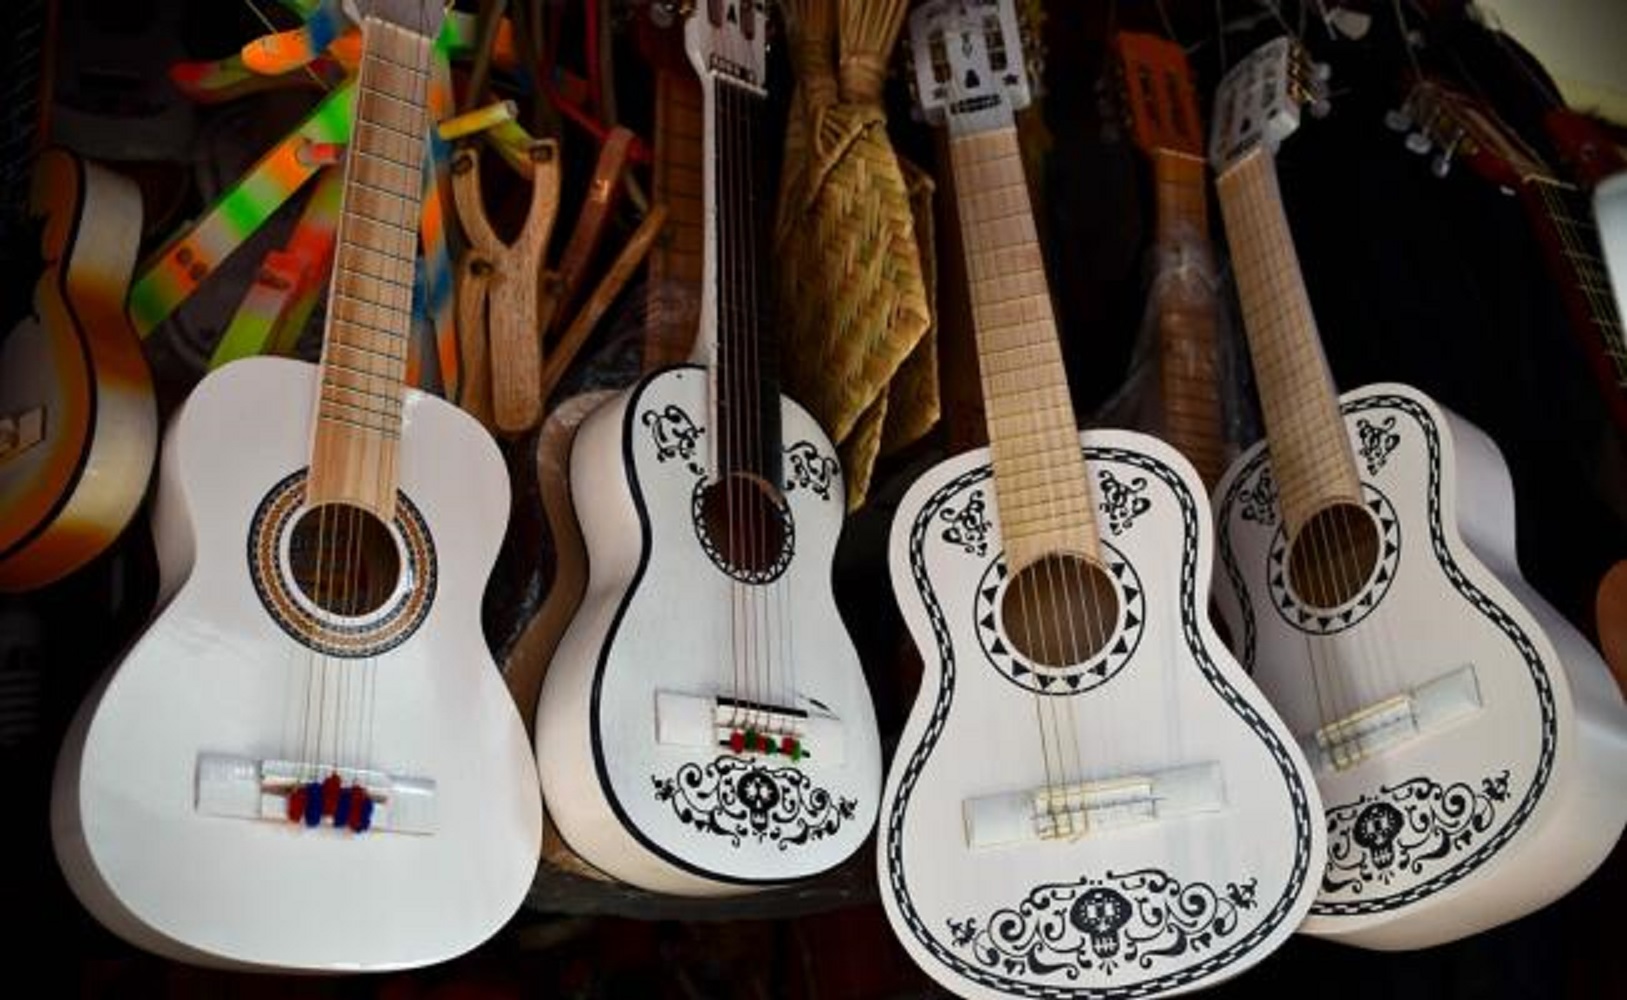 MÉXICO. La guitarra de 'Coco' cambió la vida de un pueblo – TELESANTANDER